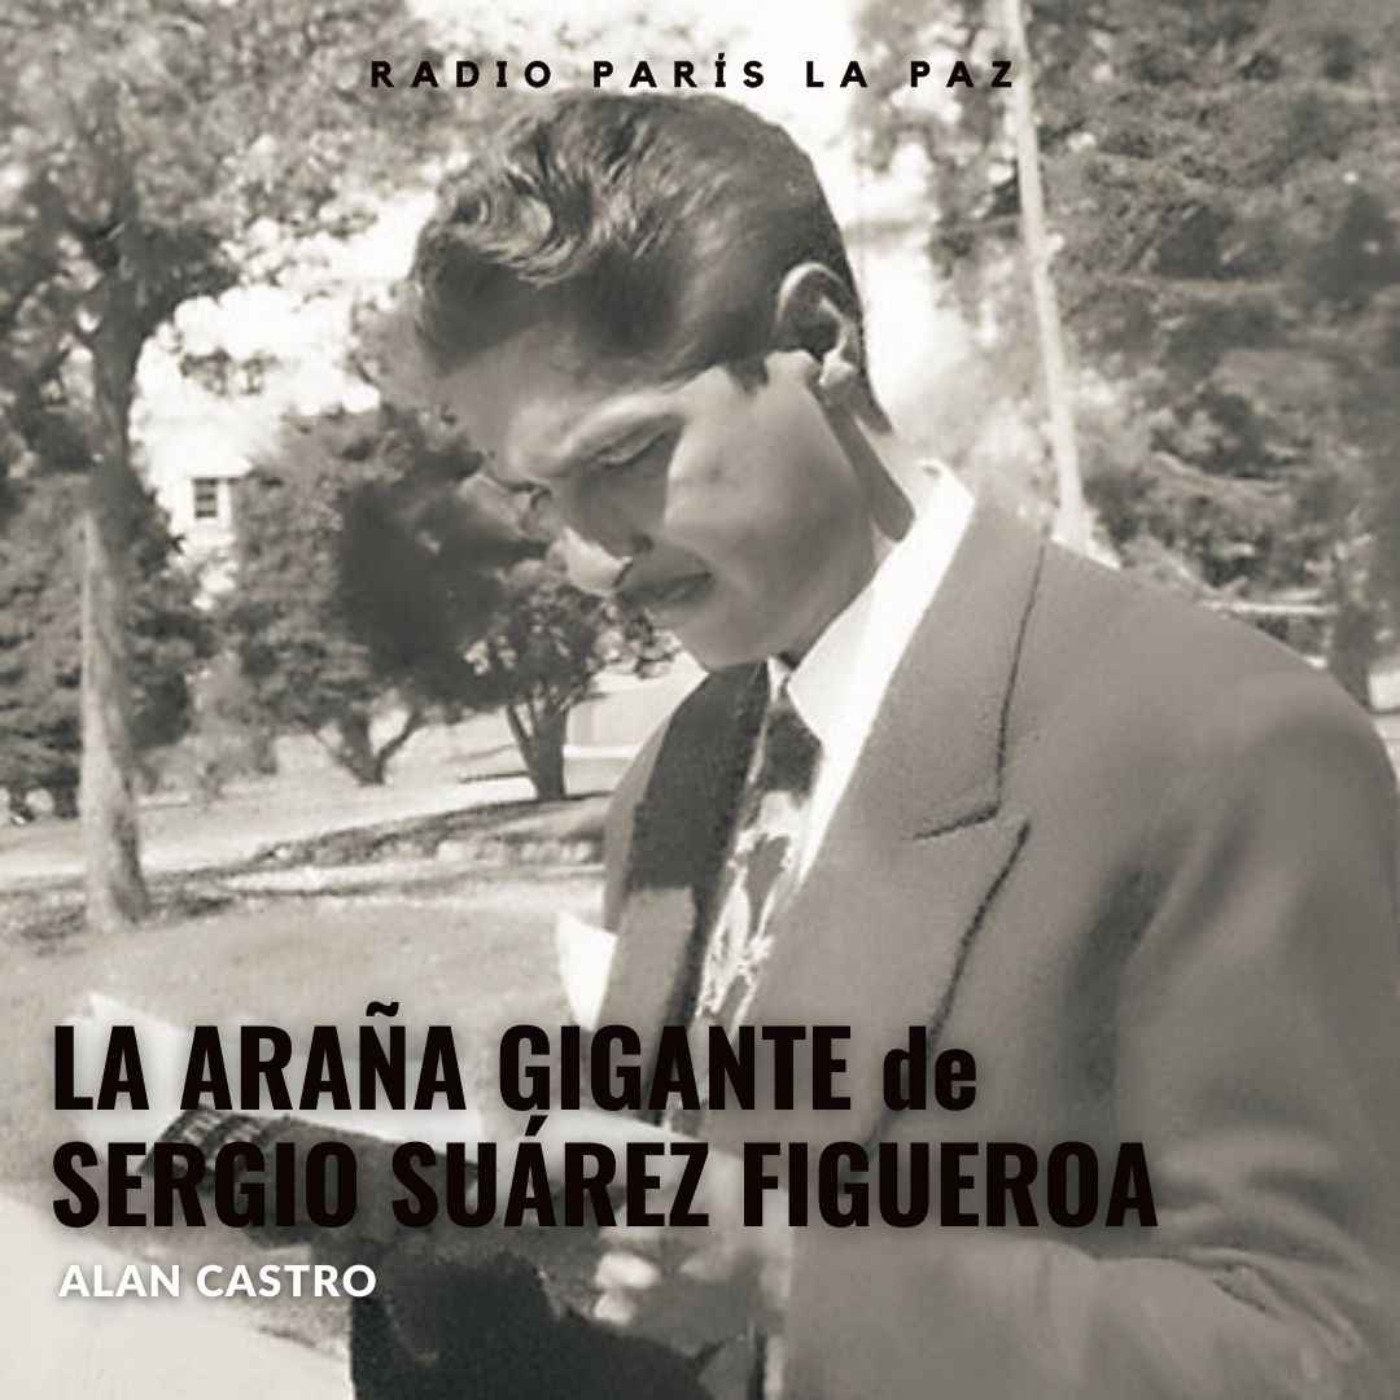 cover art for LA ARAÑA GIGANTE, Alan Castro en Radio París La Paz